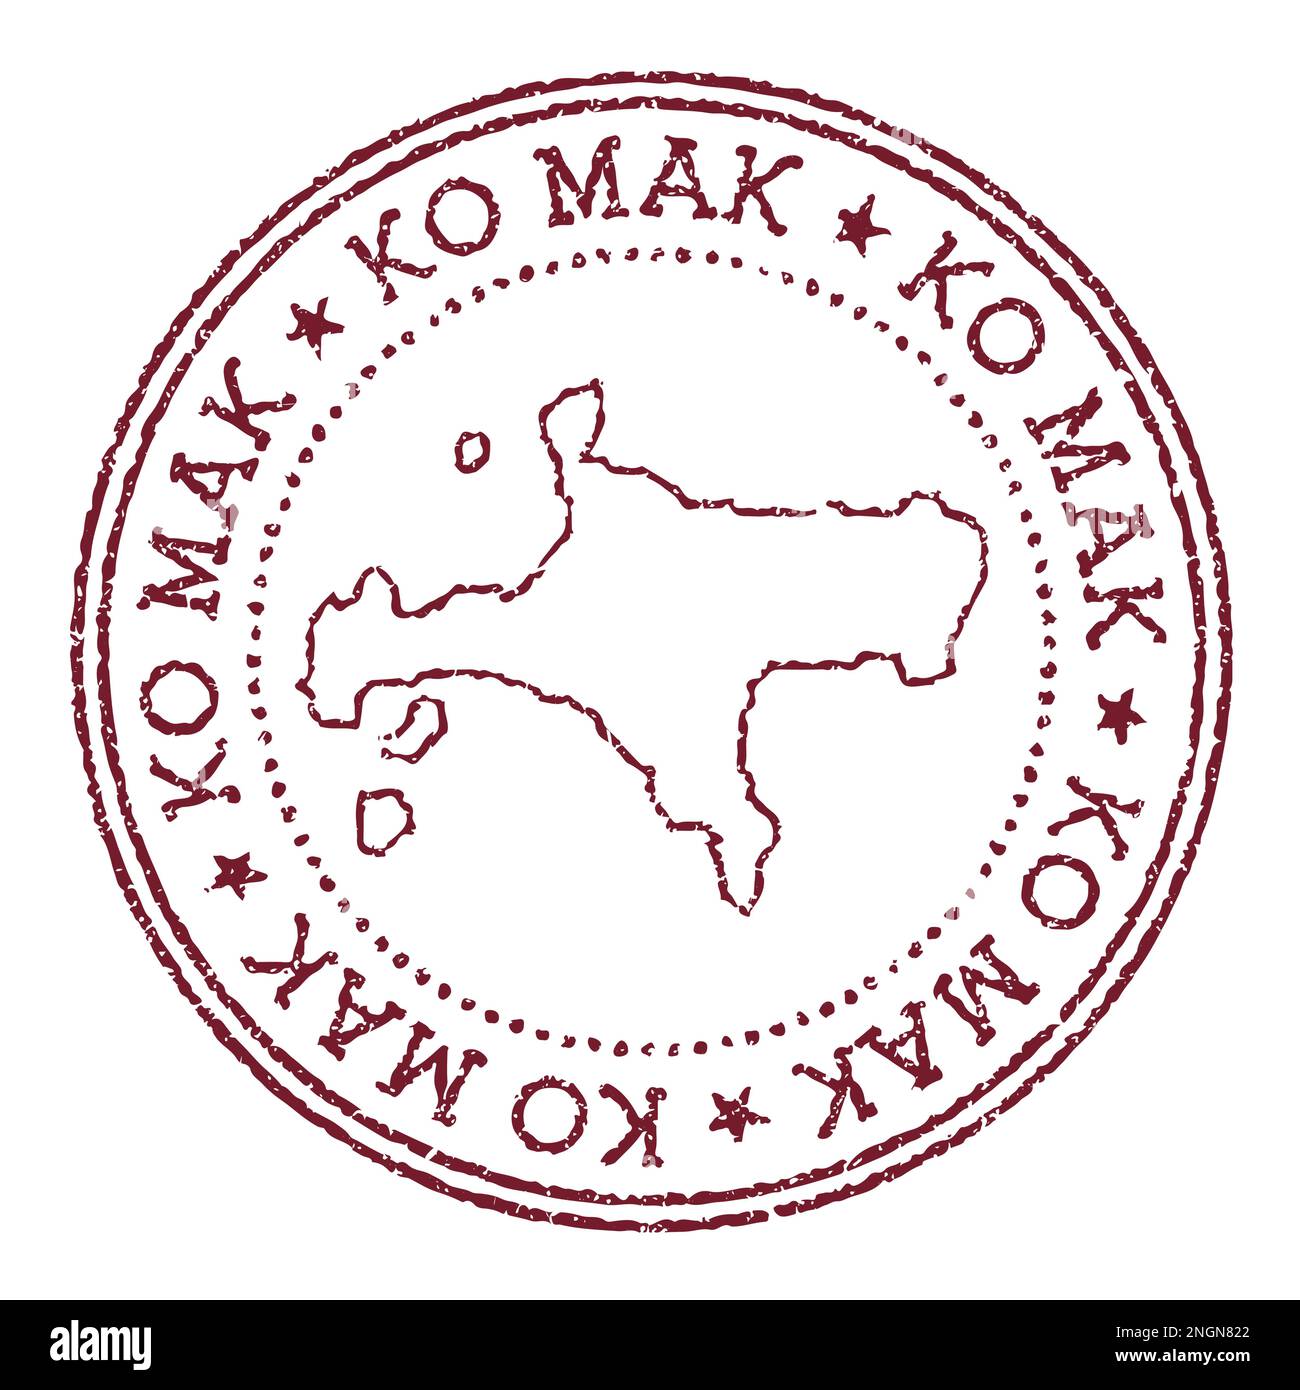 Ko Mak Rundstempel mit Inselkarte. Vintage-roter Passstempel mit kreisförmigem Text und Sternen, Vektorgrafik. Stock Vektor